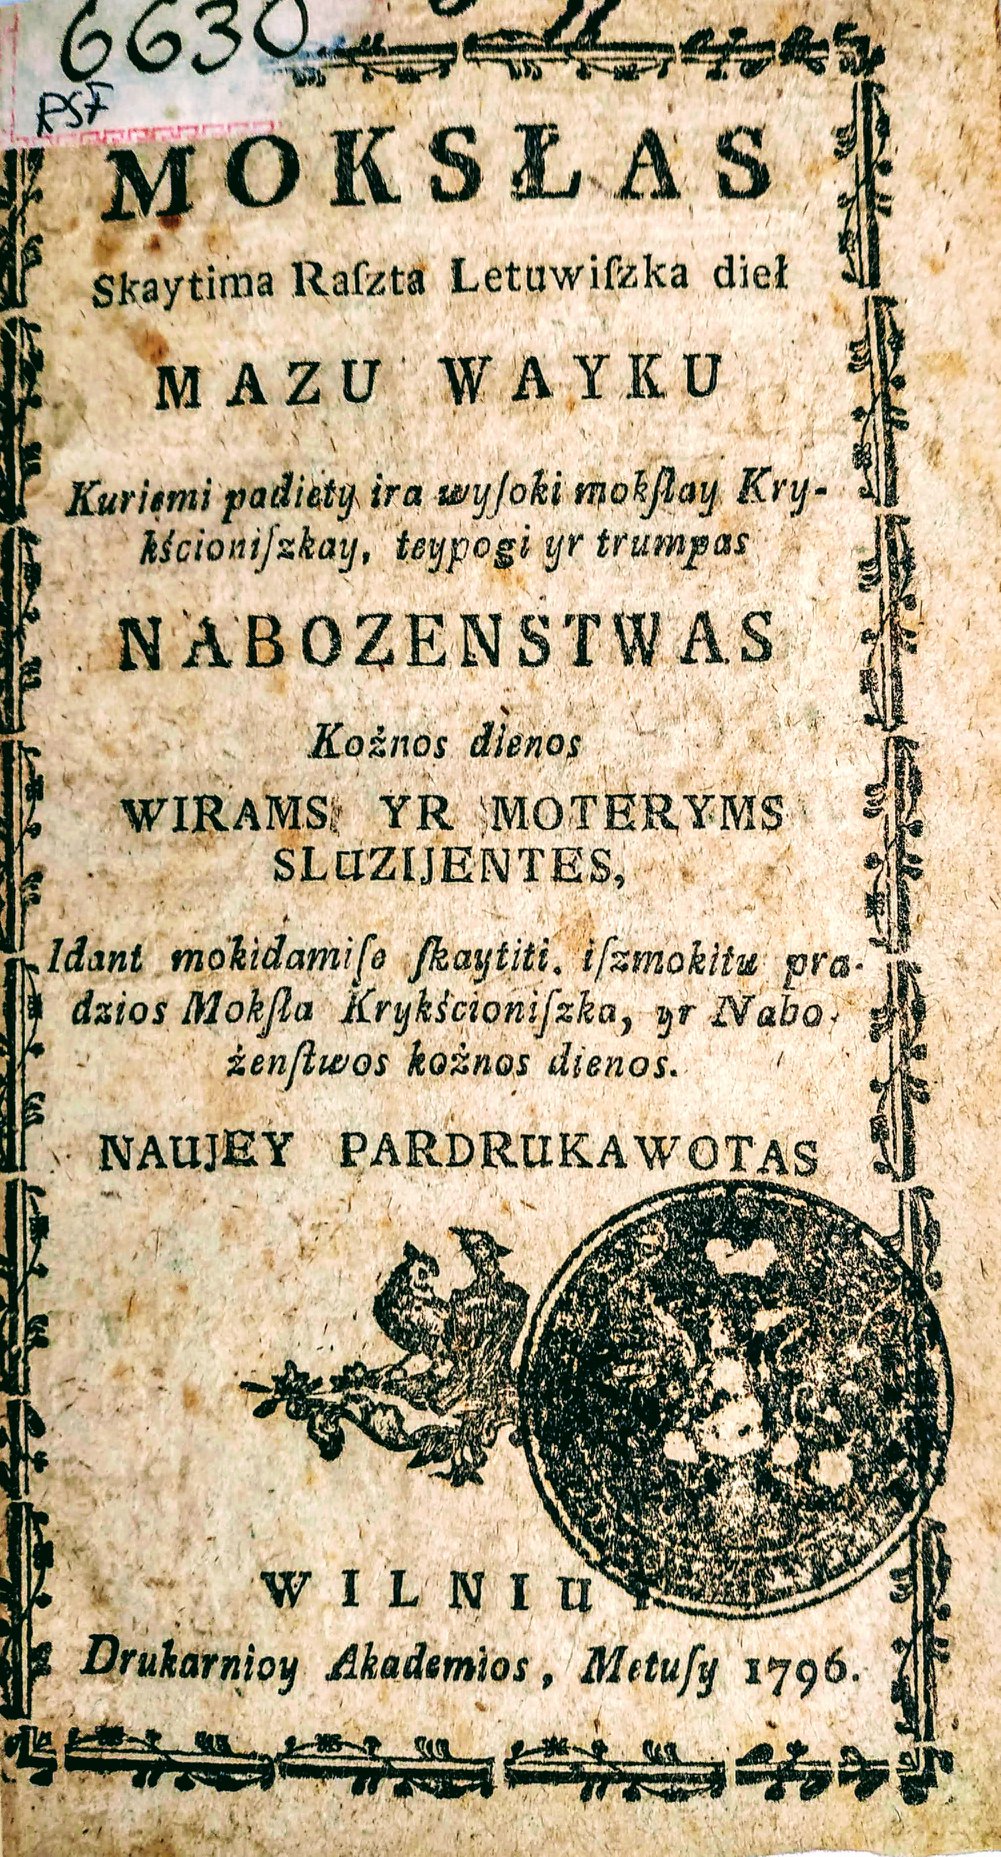 Mokslas skaitymo ir rašymo mažų vaikų, 1796.jpg